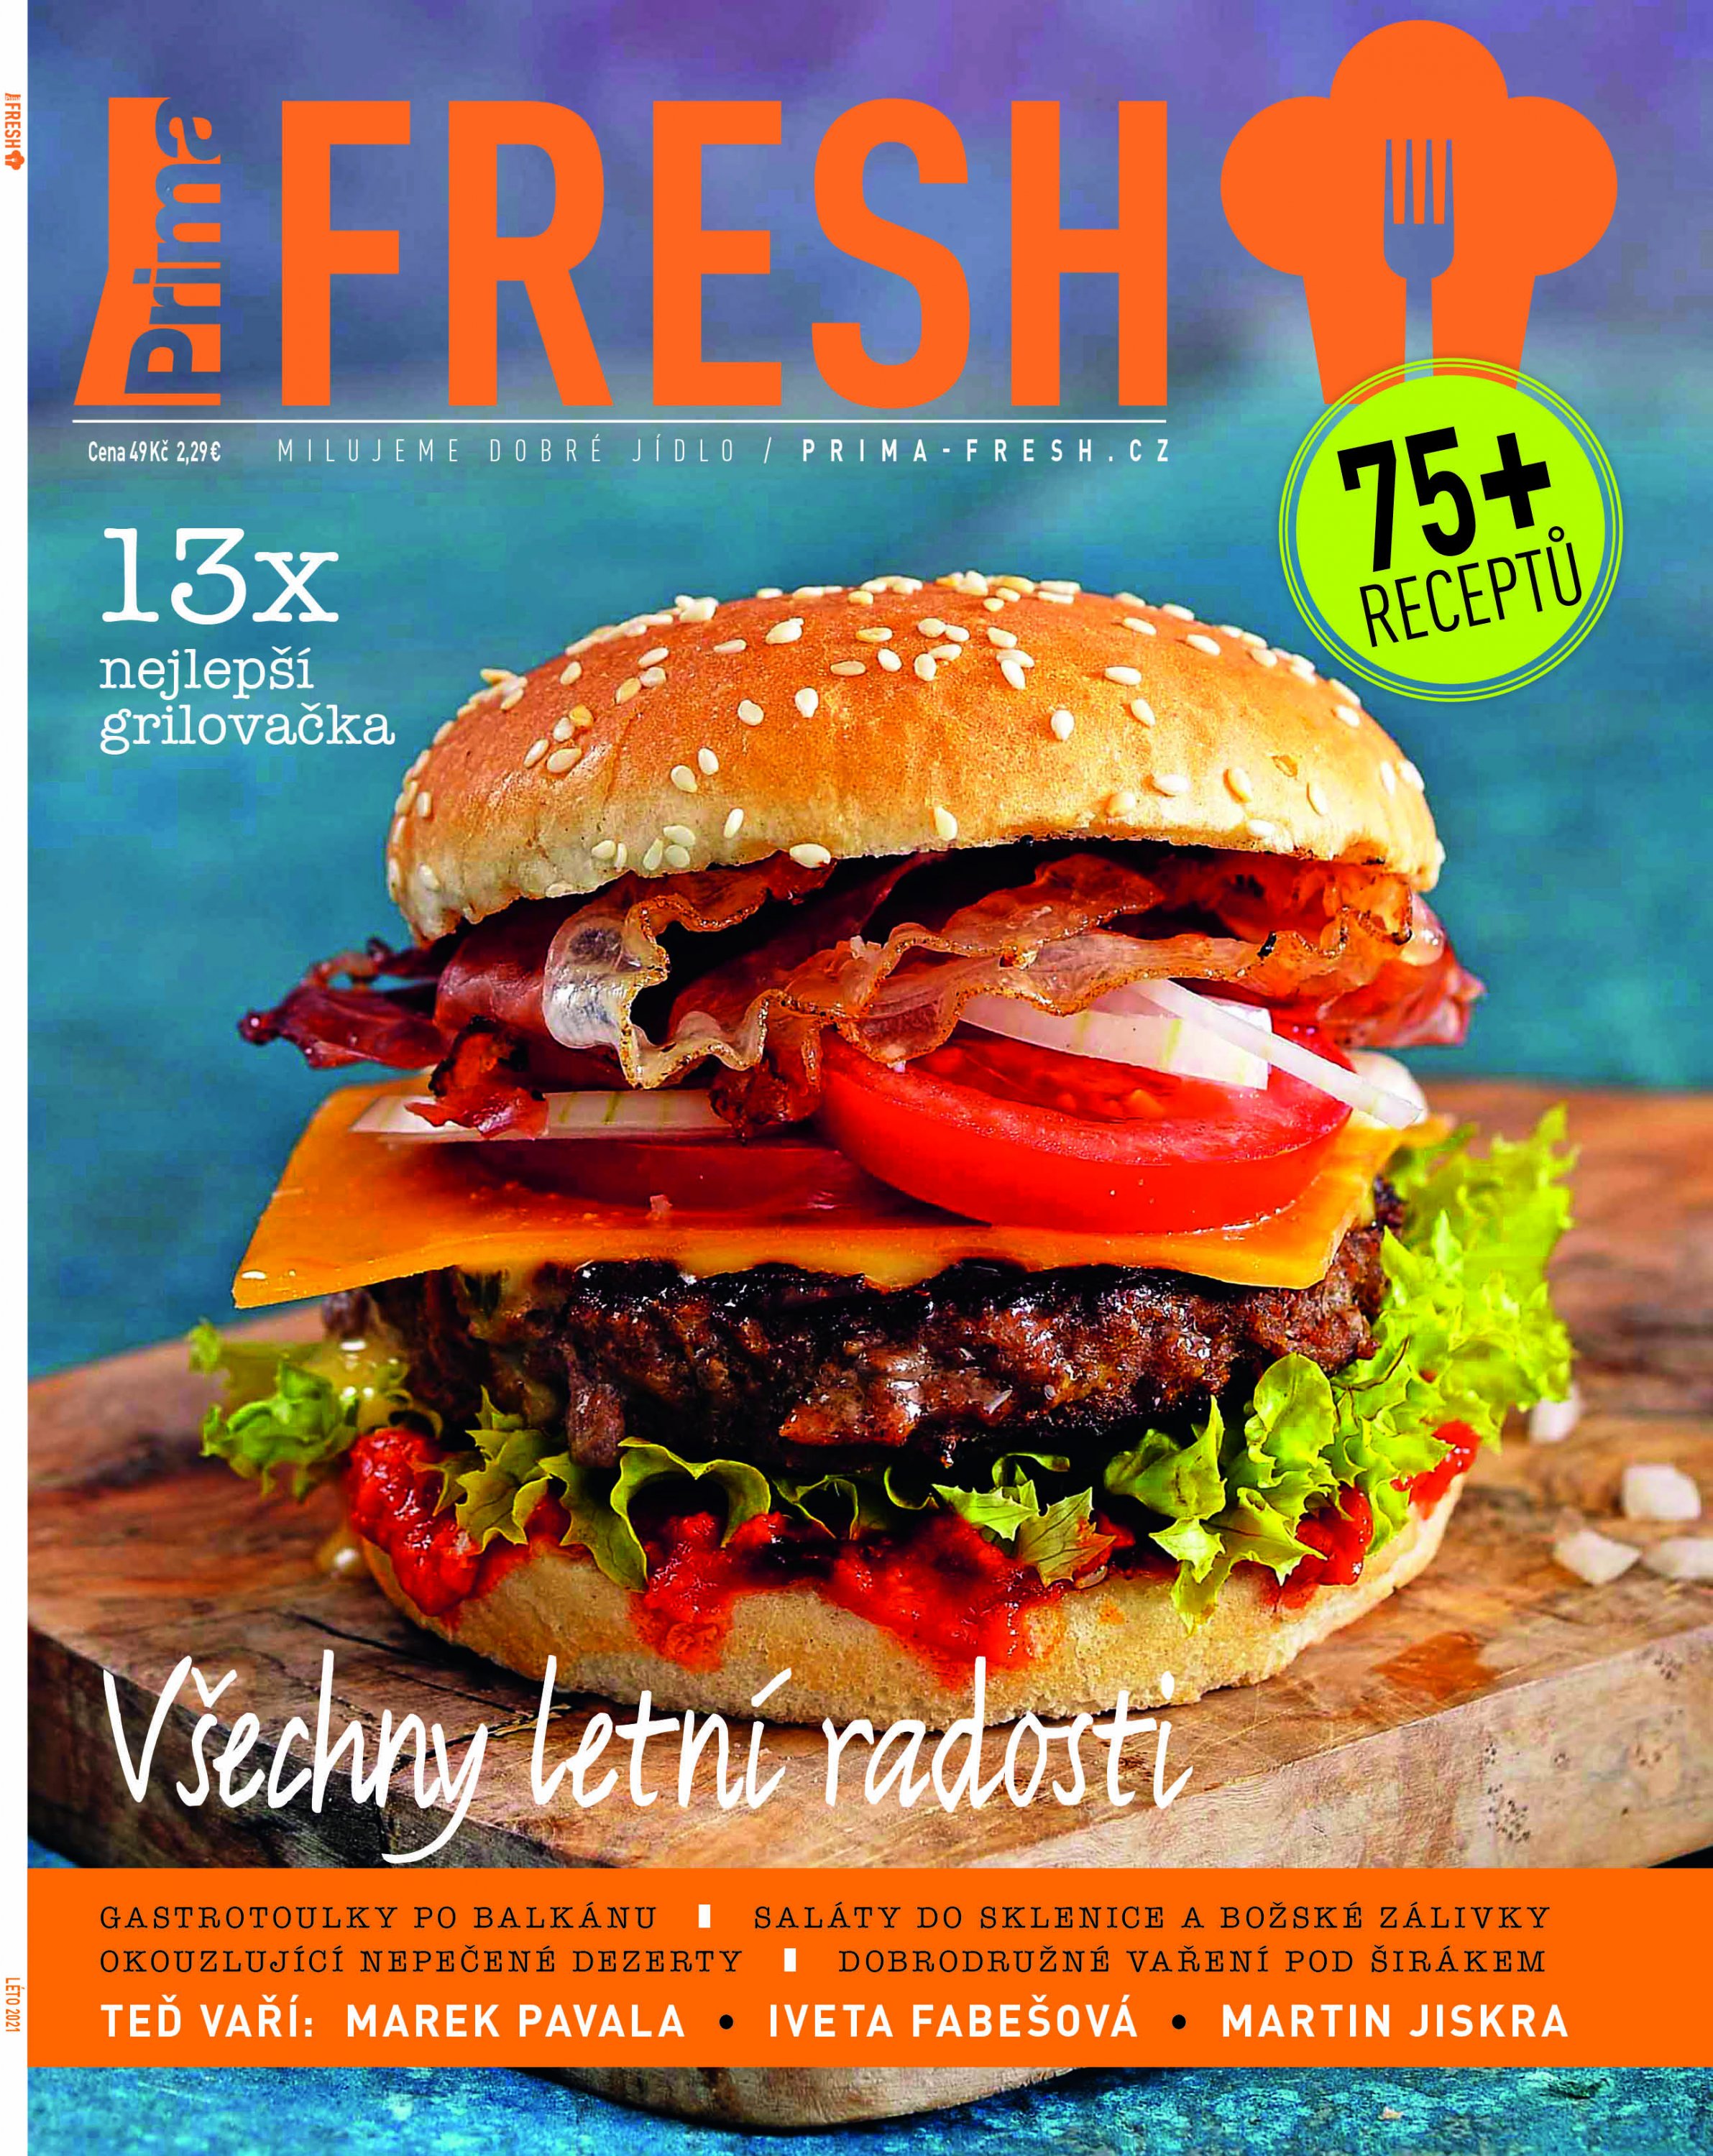 Časopis Prima Fresh & Všechny letní radosti